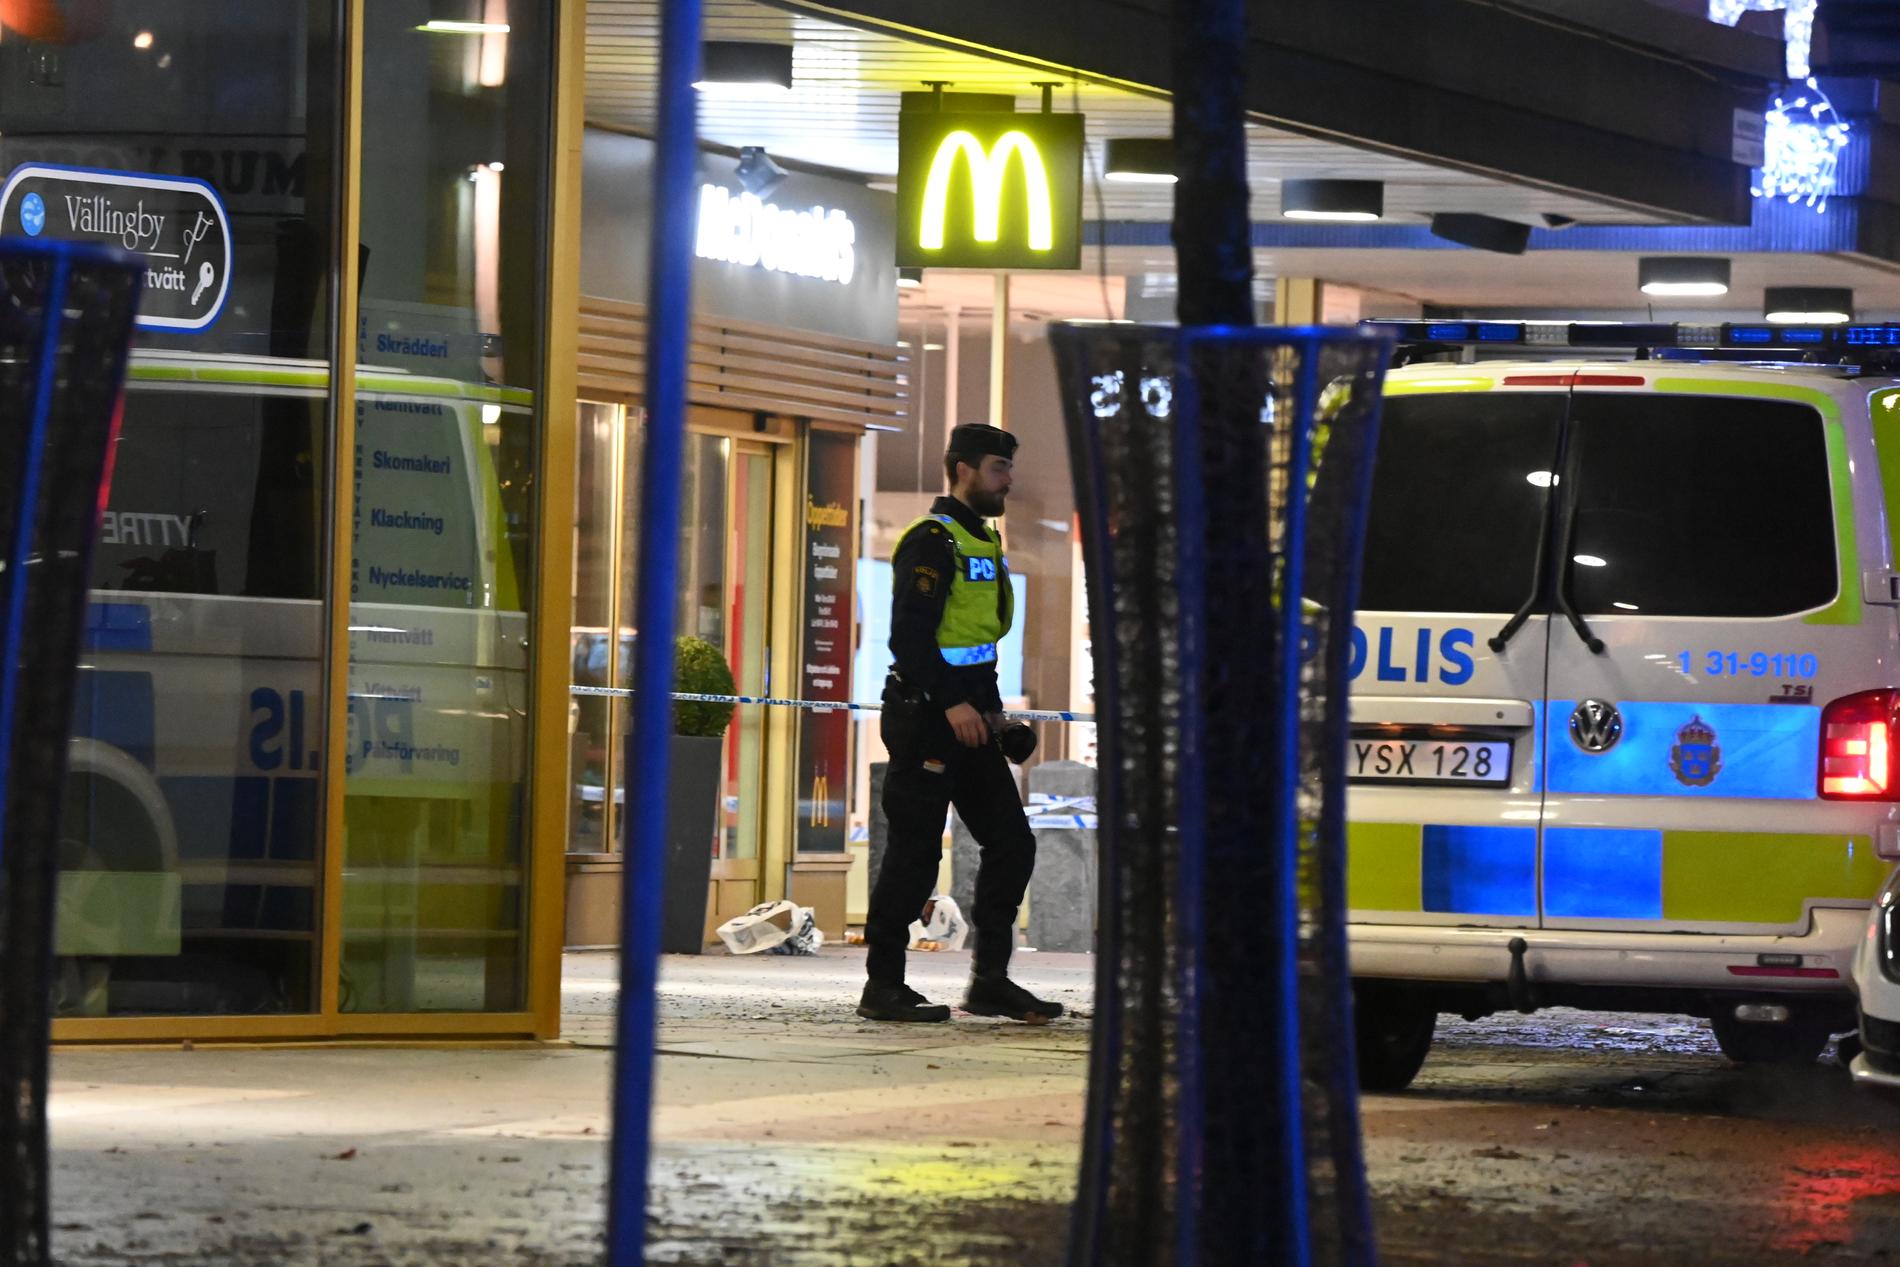 Skottlossningen inträffade utanför McDonalds, enligt uppgifter till Aftonbladet. 